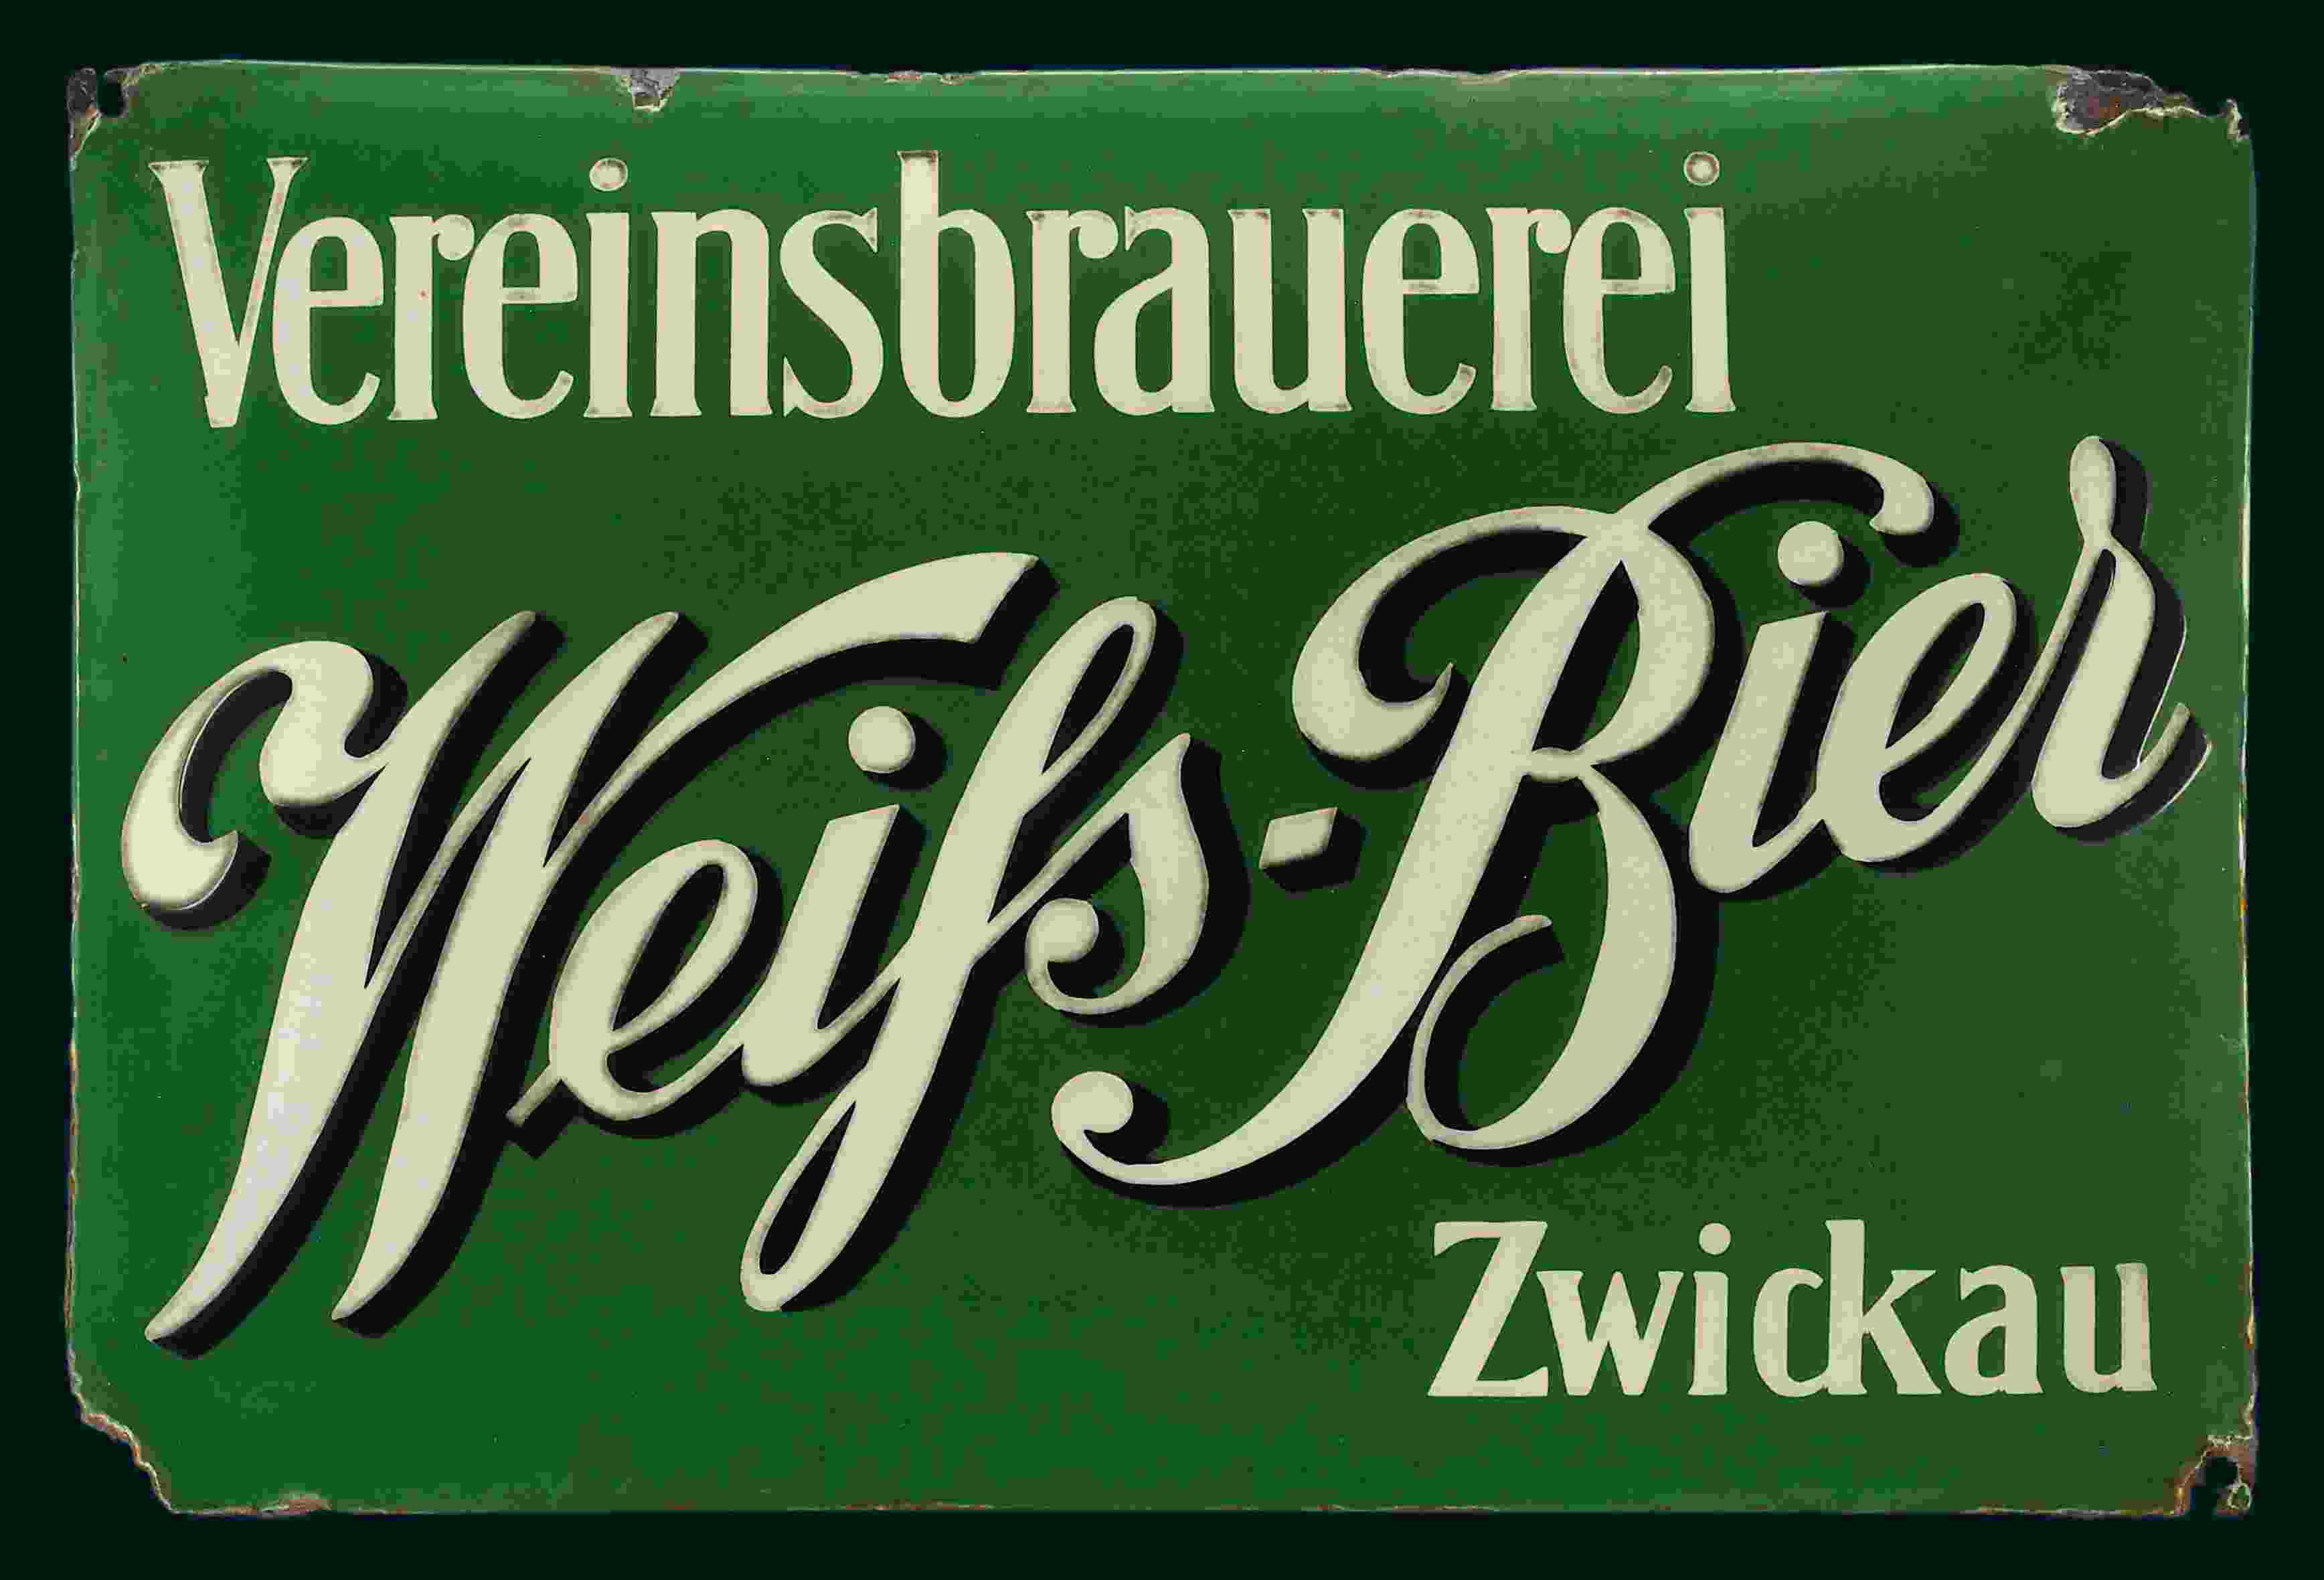 Vereinsbrauerei Weiss-Bier 